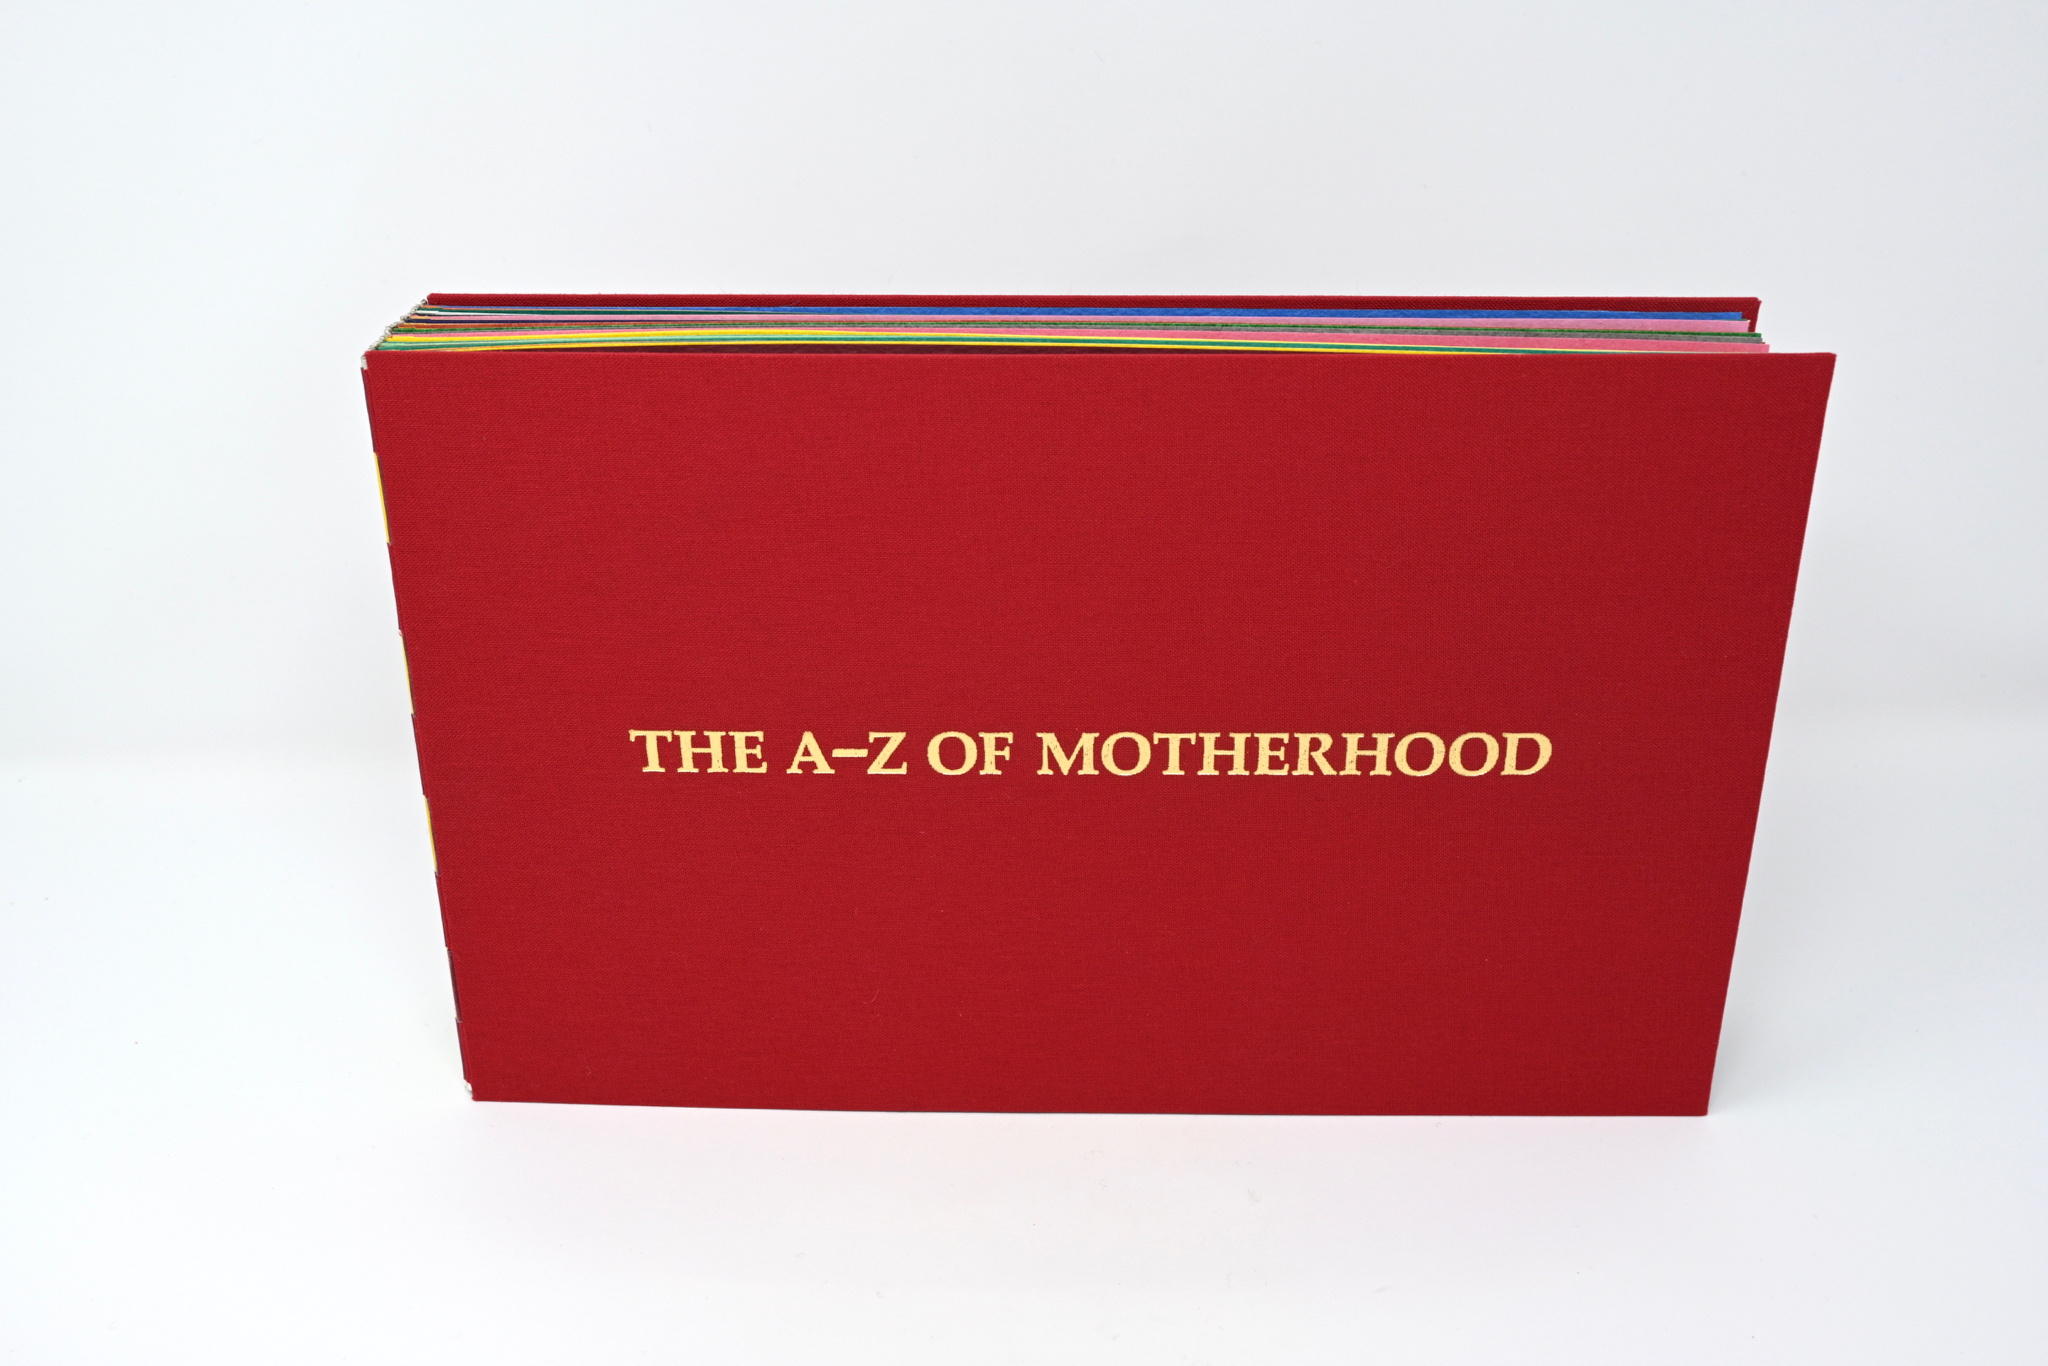 The A-Z of Motherhood